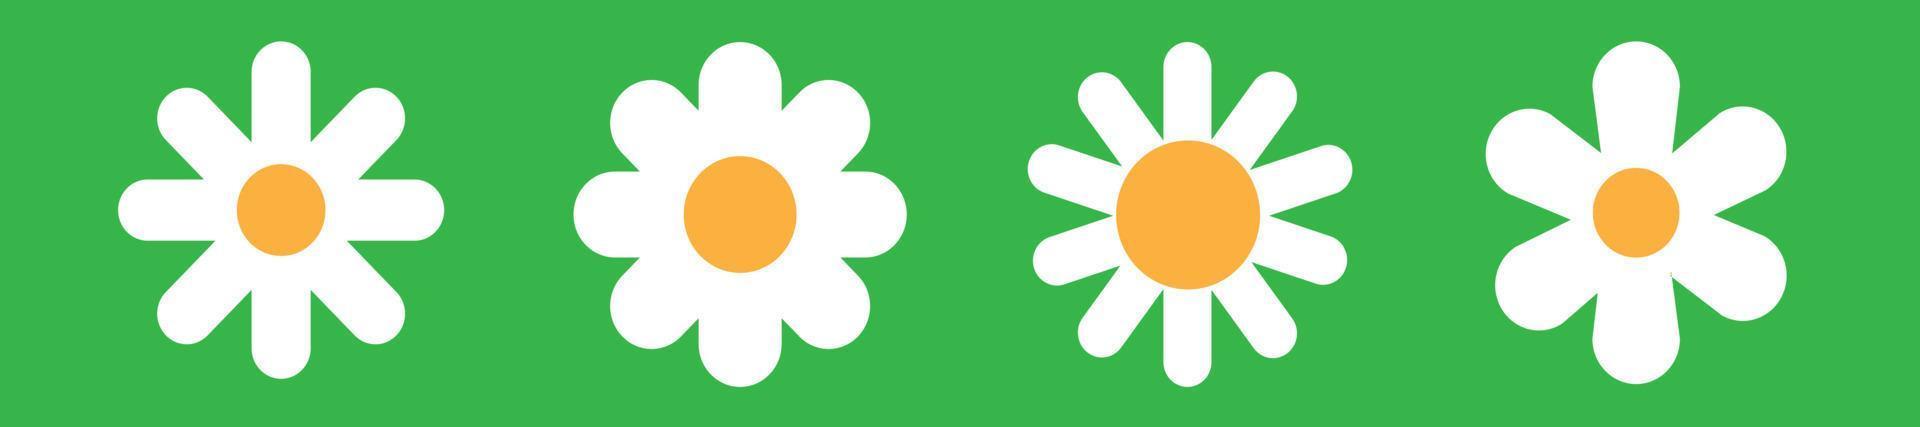 conjunto de ícones de flor branca. ícone de camomila margarida. sumbol simples flui sobre fundo verde. estilo simples de planta de flores vetor